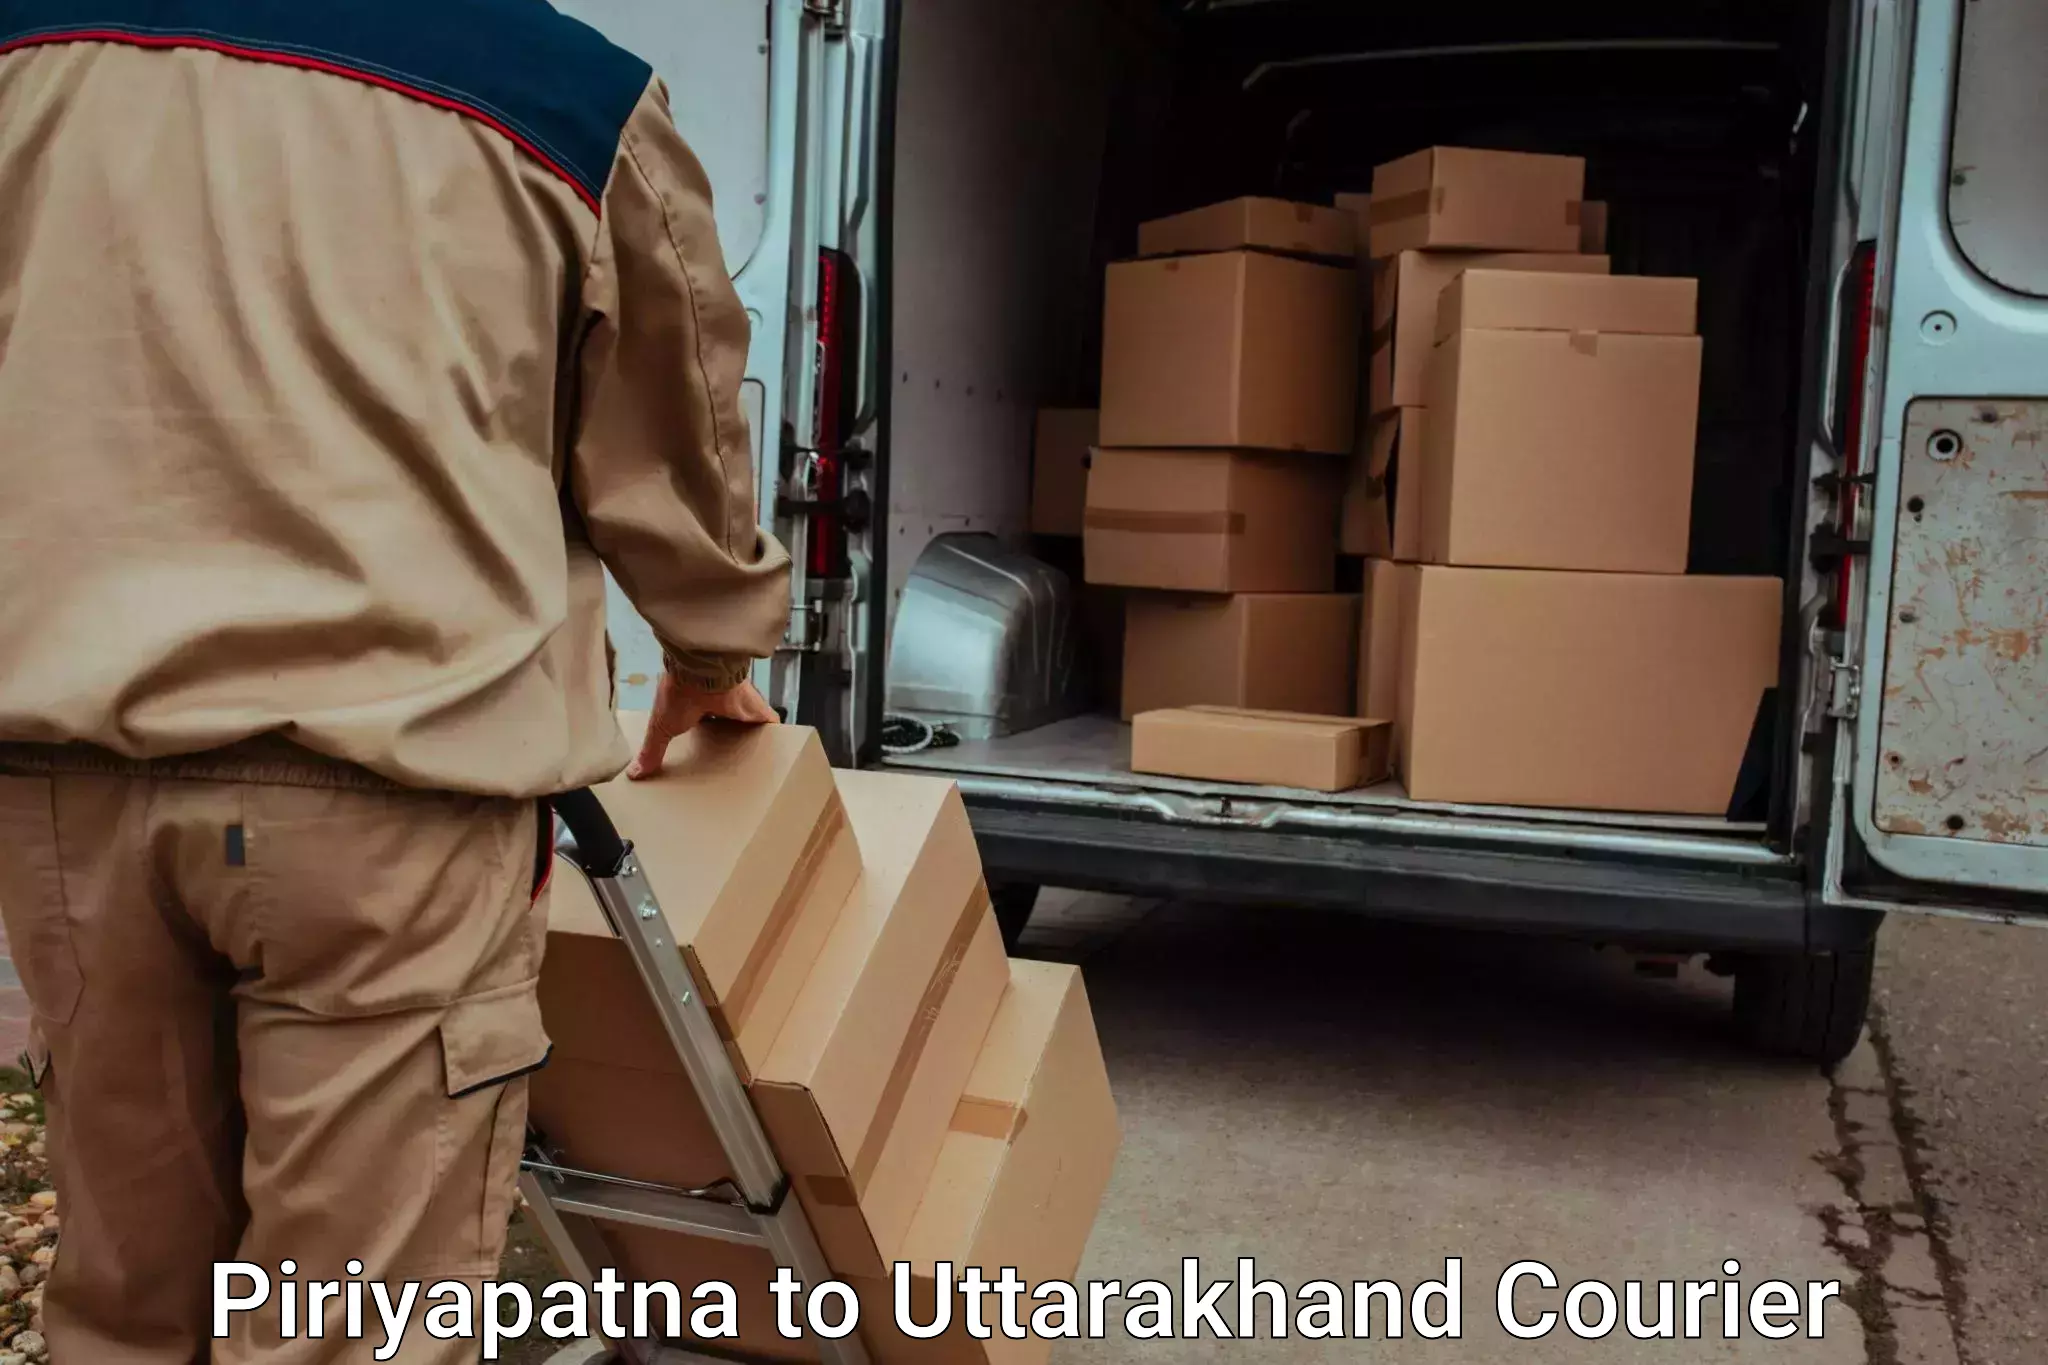 Seamless moving process Piriyapatna to Uttarakhand